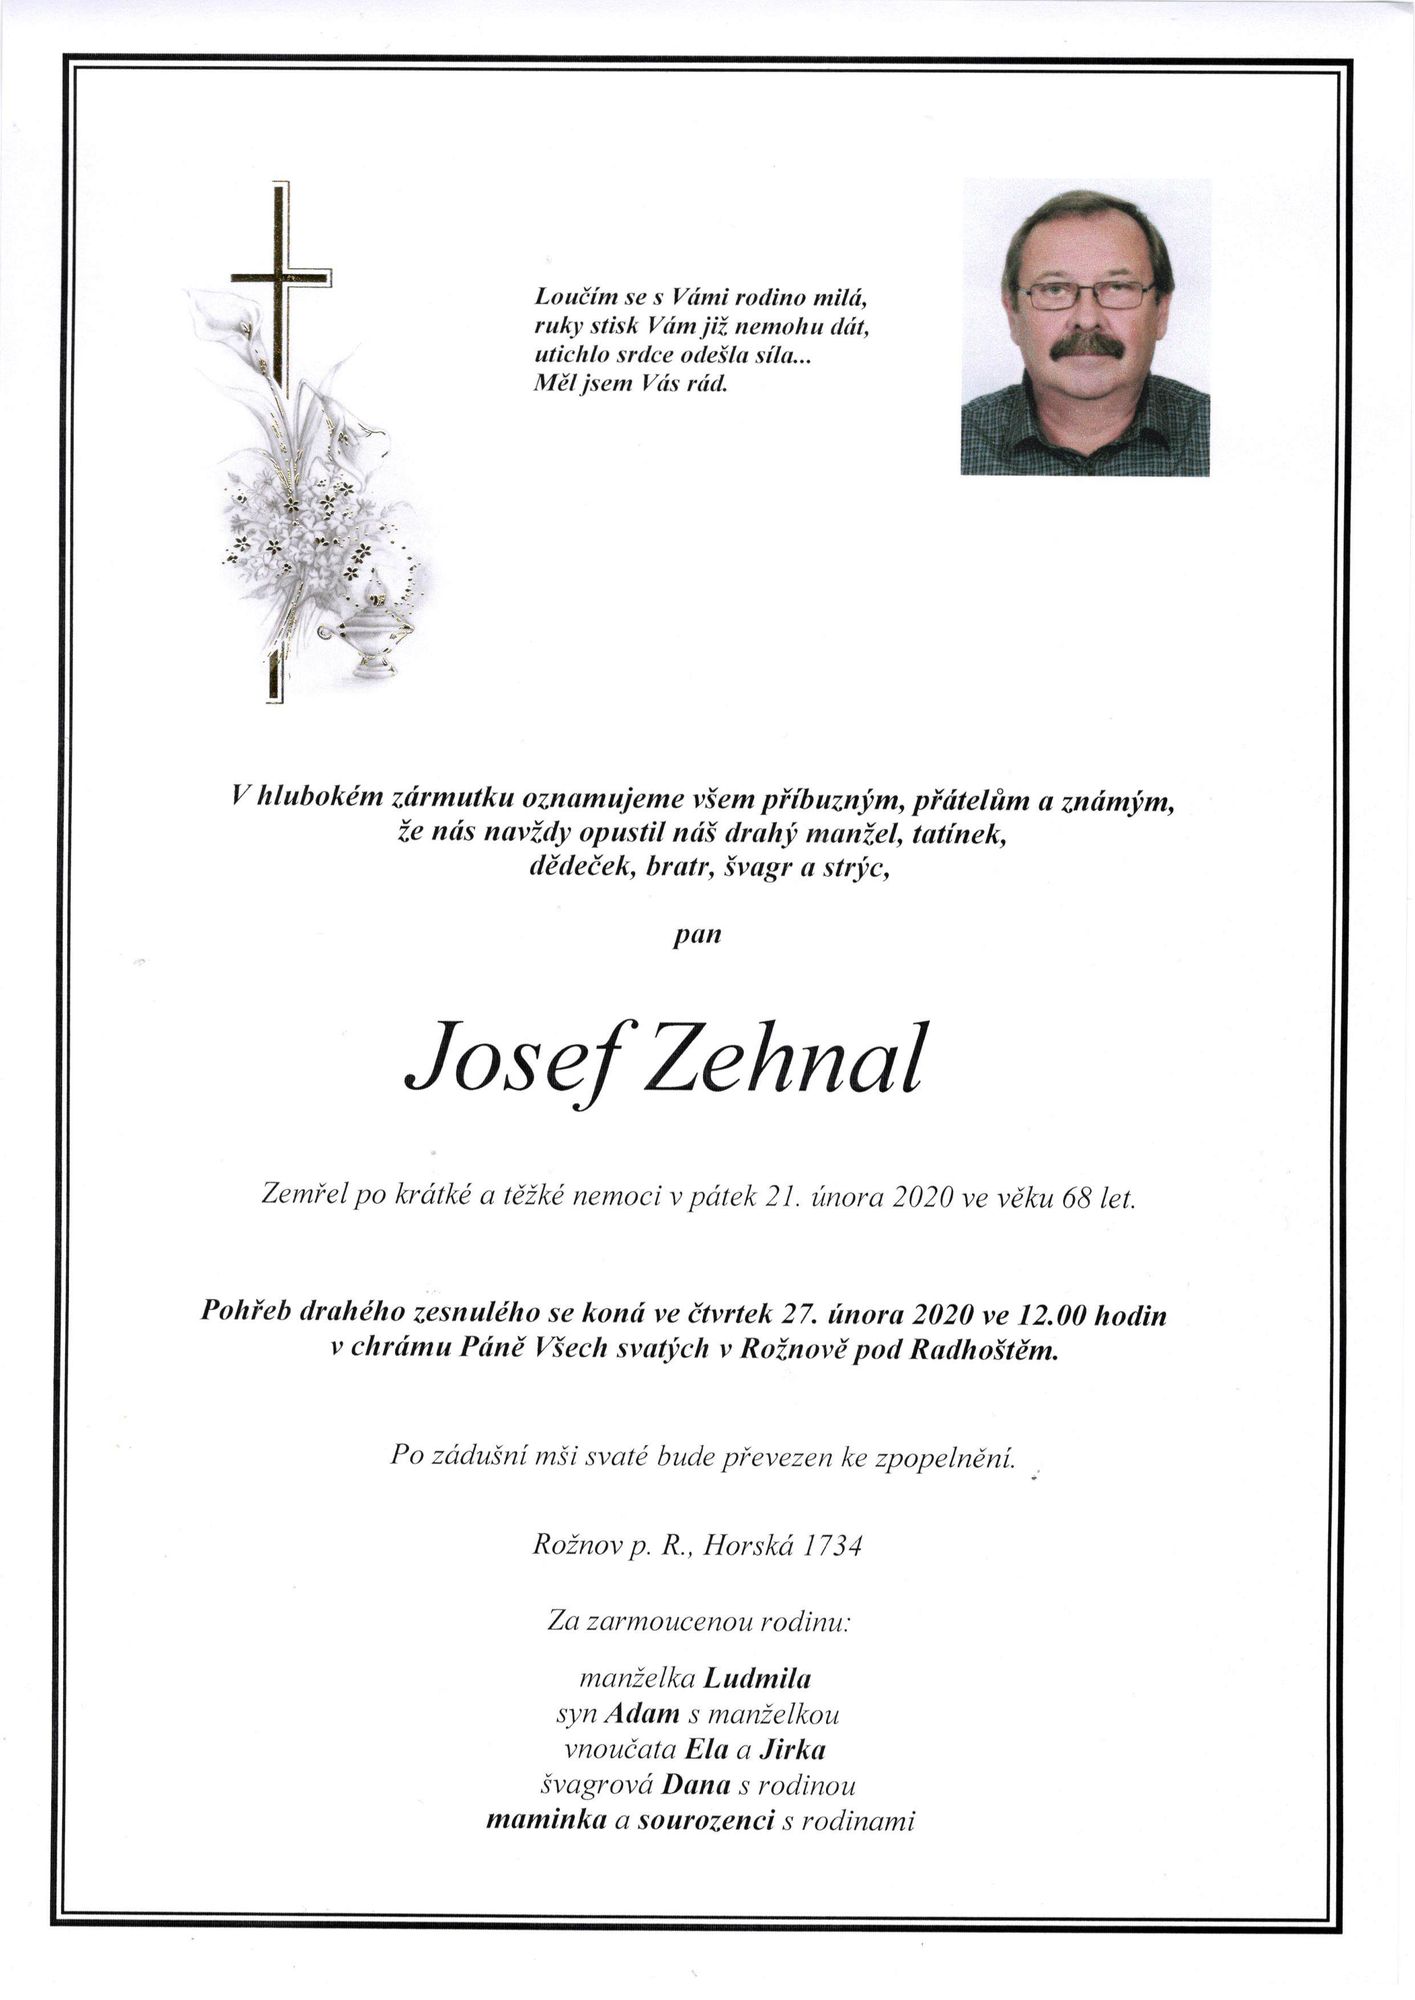 Josef Zehnal